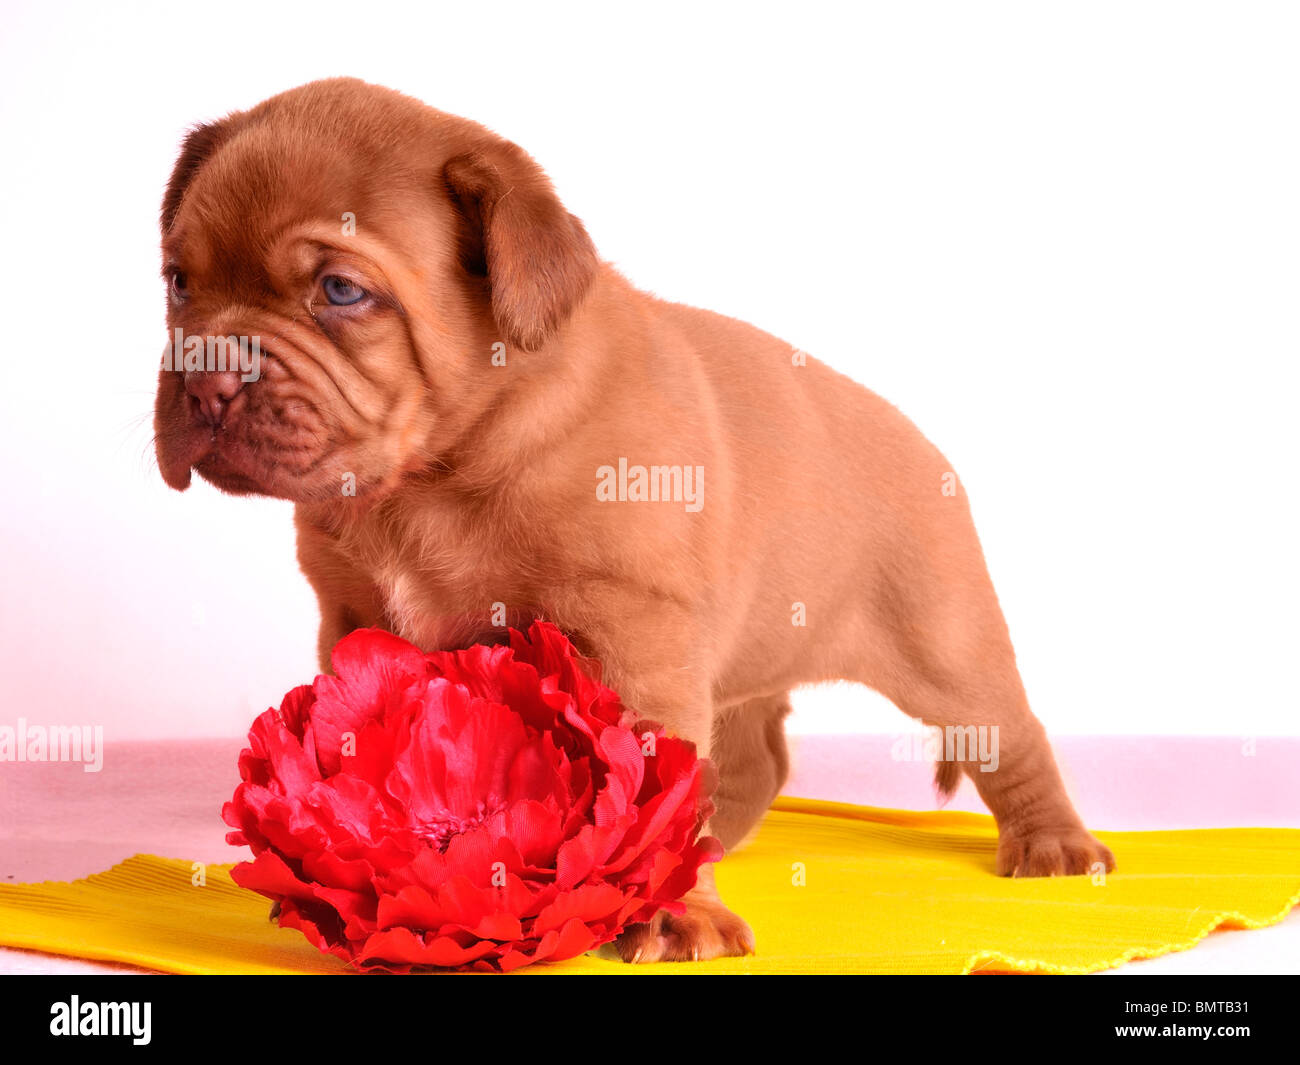 Cute un mois vieux Dogue de Bordeaux chiot est debout près de fleur rouge Banque D'Images